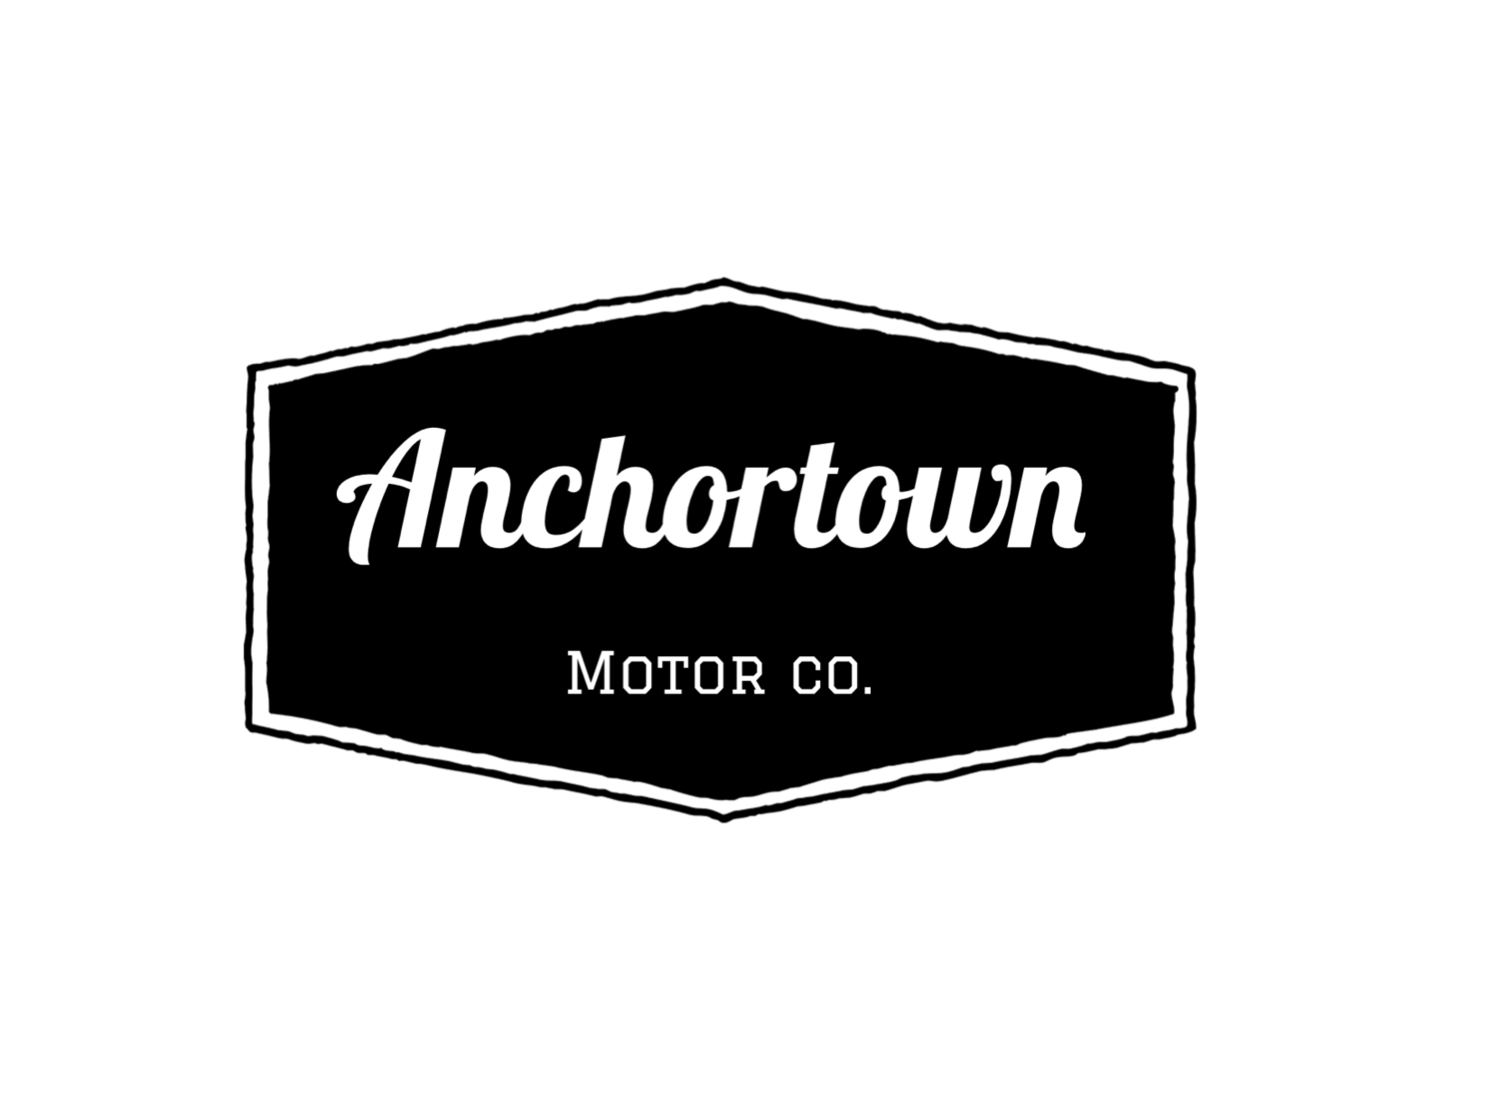 Anchortown motor co.